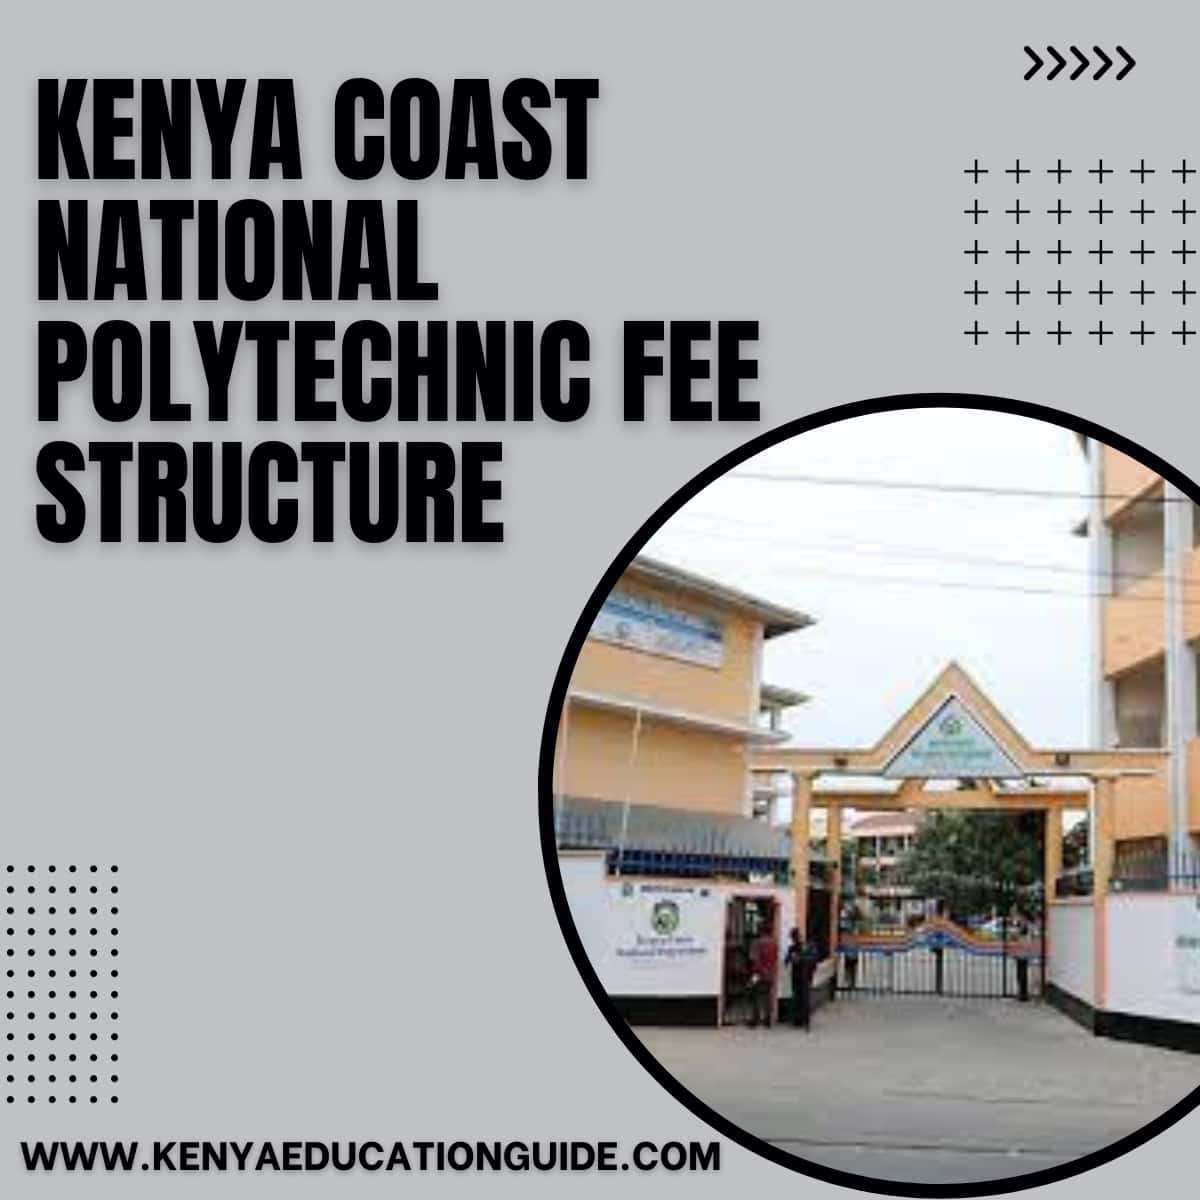 Kenya Coast National Polytechnic Fee Structure